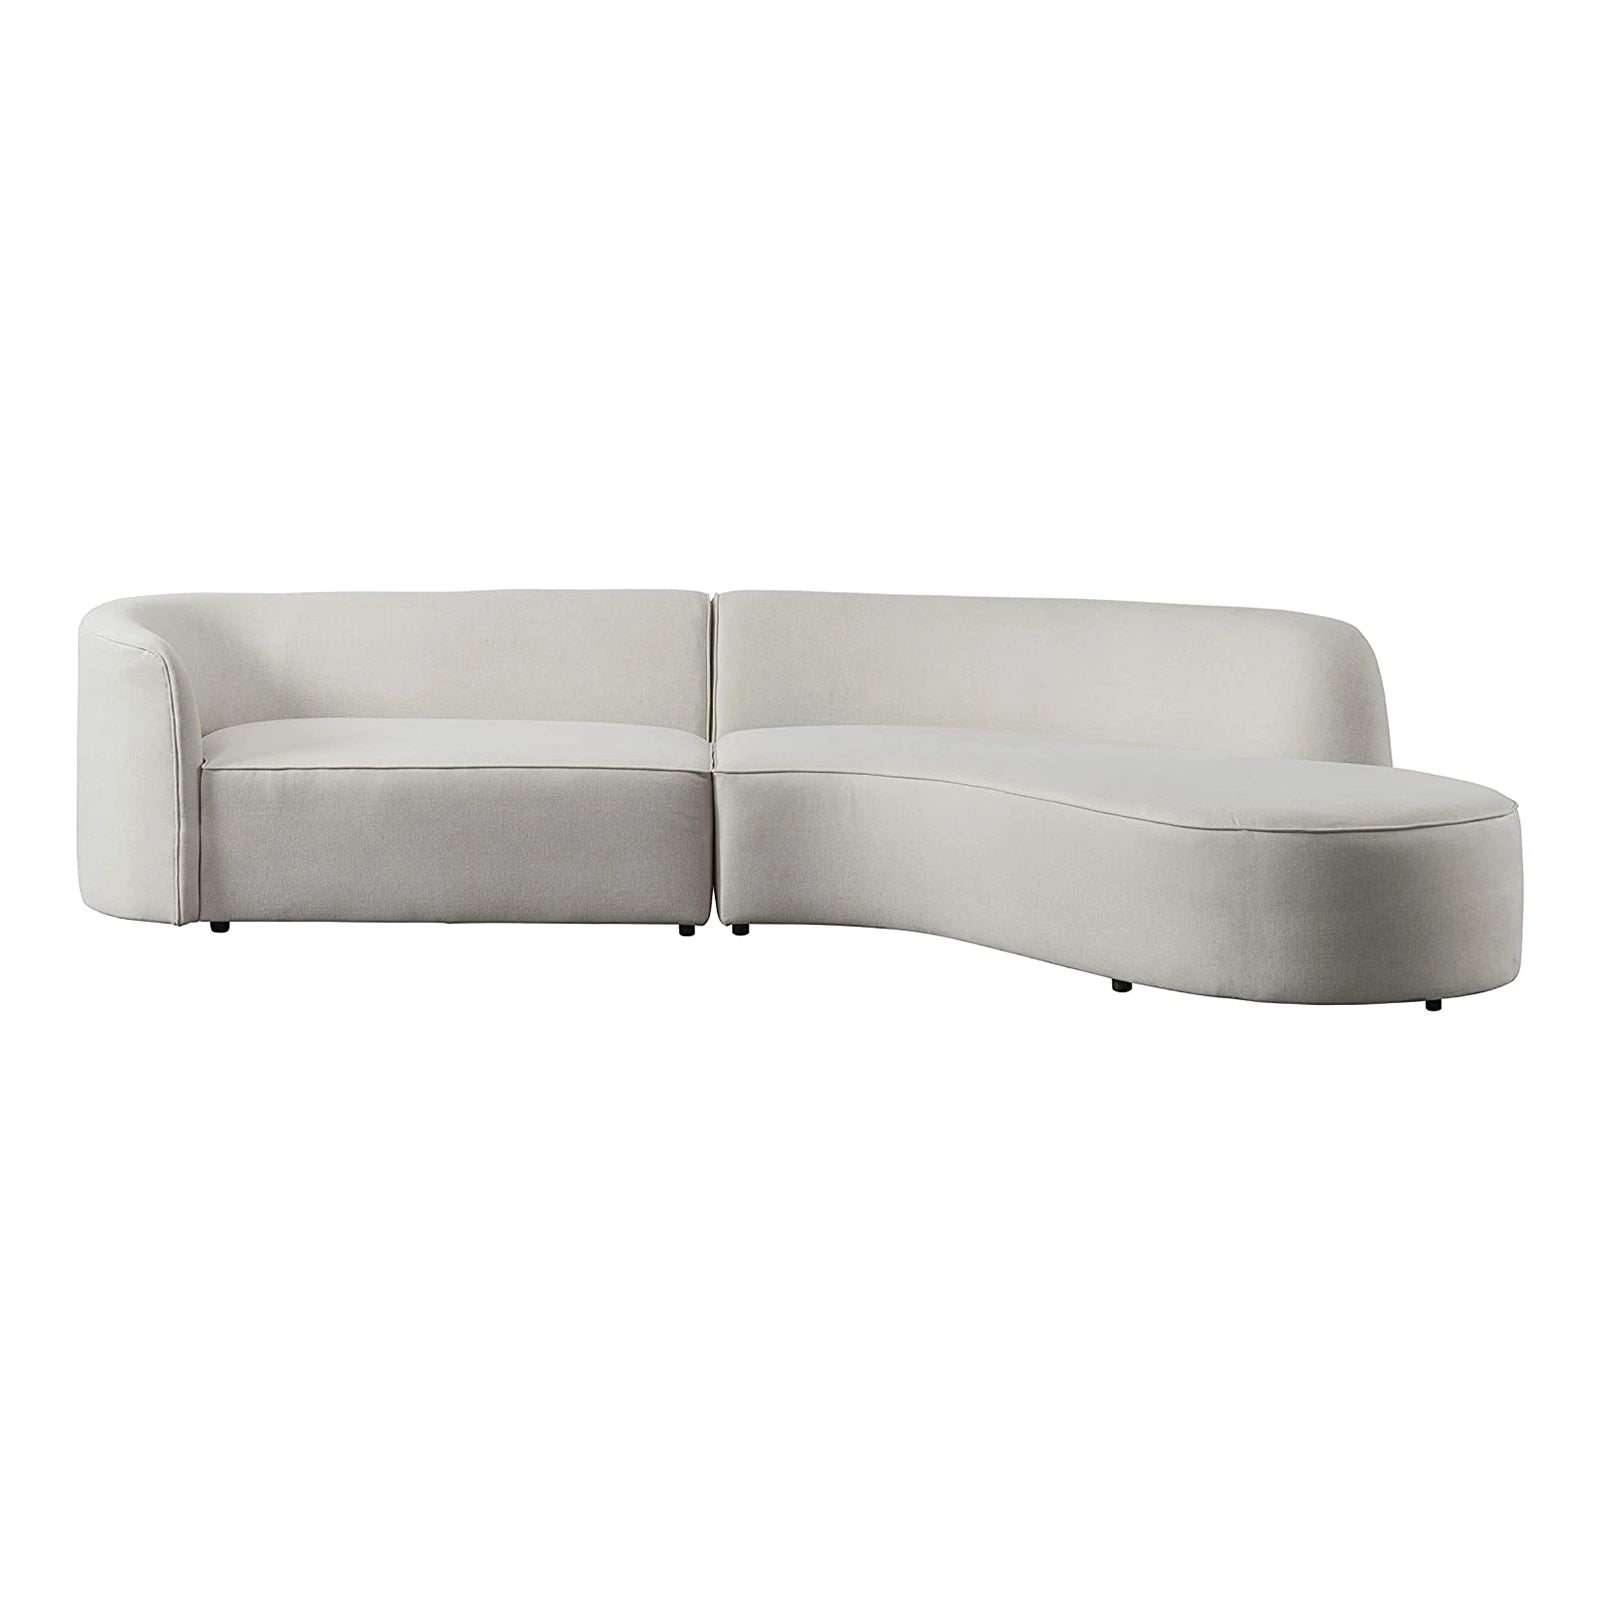 Sofá seccional de cuero con chaise, curvado, orientado hacia la derecha, con tapicería moderna de lujo